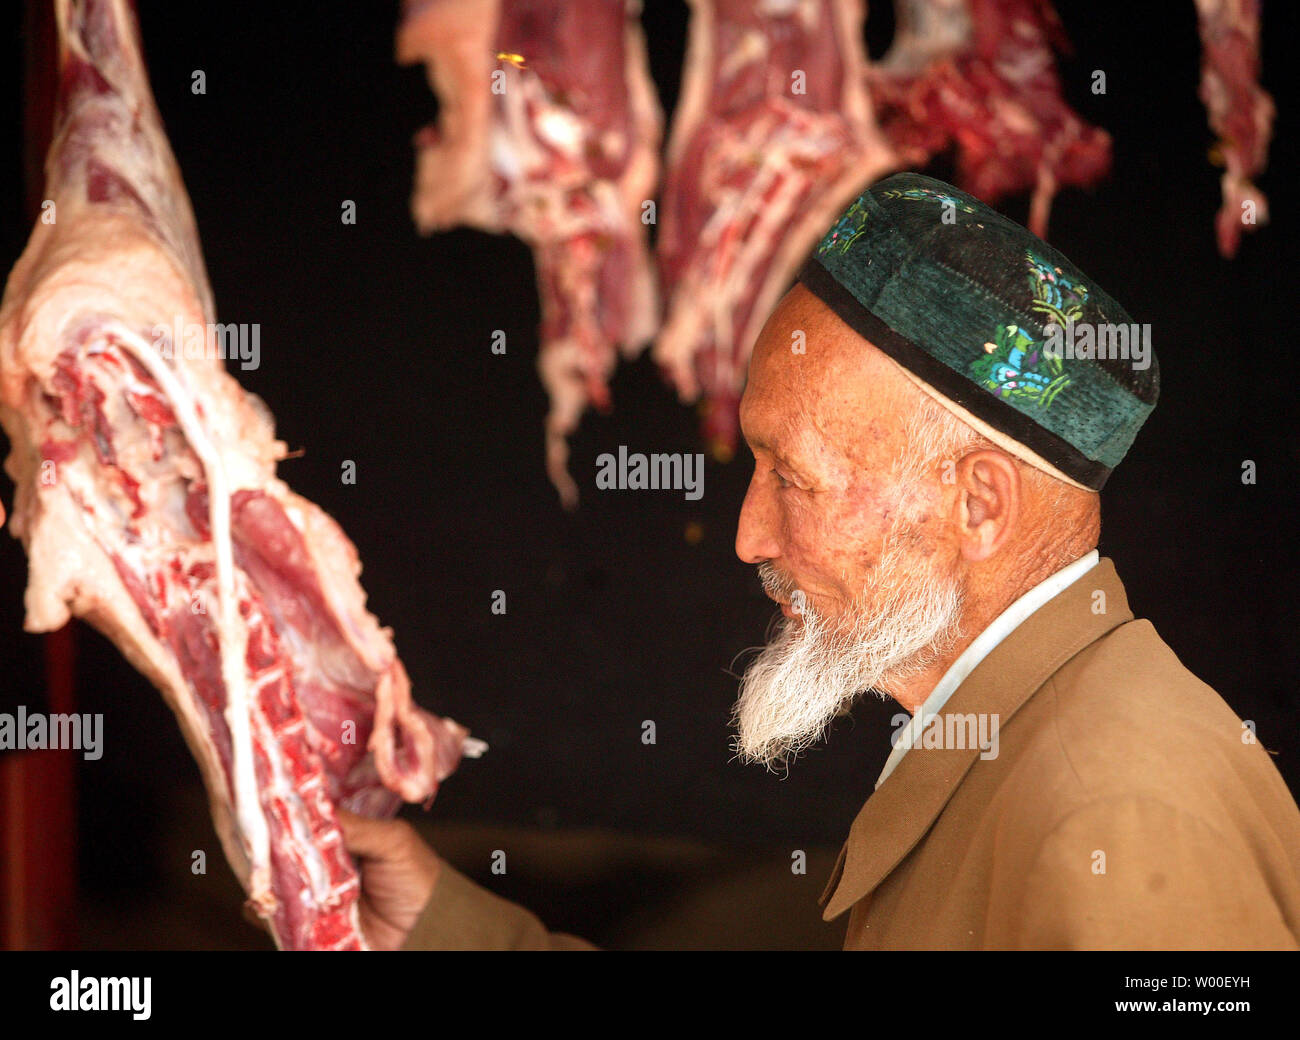 Un anziano uomo Uighur ispeziona fresco agnello macellato per la vendita su un mercato Uighur nel centro di Urumqi, Xinjiang, 14 settembre 2006. Tra le vittime della "guerra al terrorismo" sono ampiamente dimenticate popoli musulmani del Xinjiang. Questa immensa area è quasi grande come tutta l'Europa occidentale ed era tradizionalmente abitati da Musulmani uiguri, Kazaks, e alcuni piccoli gruppi. Tuttavia, gli ultimi due decenni hanno visto un afflusso massiccio di Han immigrati cinesi e la nativa popolazione musulmana è in pericolo di essere sopraffatti nel proprio cuore. Il risentimento contro cinese Han e politico Foto Stock